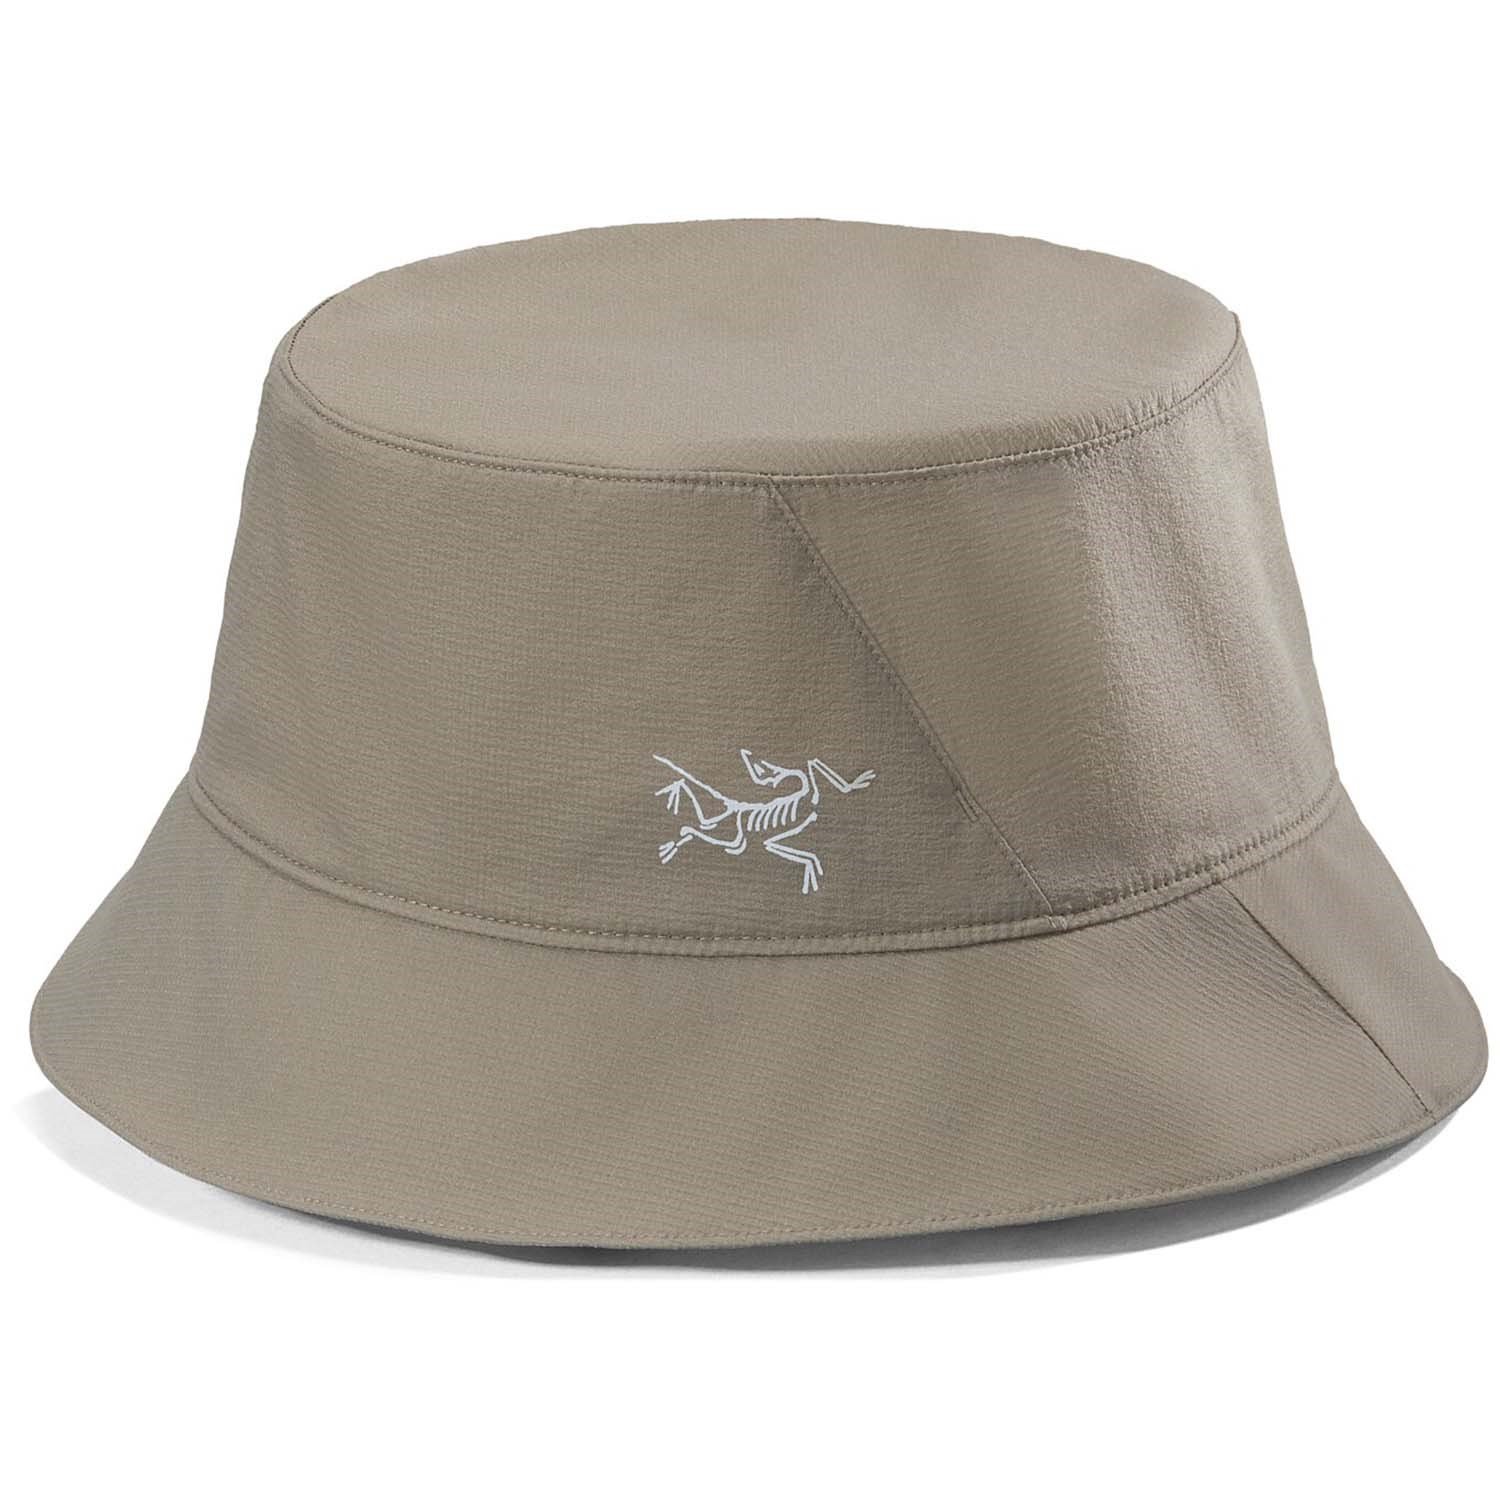 Arc'teryx Aerios Bucket Hat, Forage / S-M